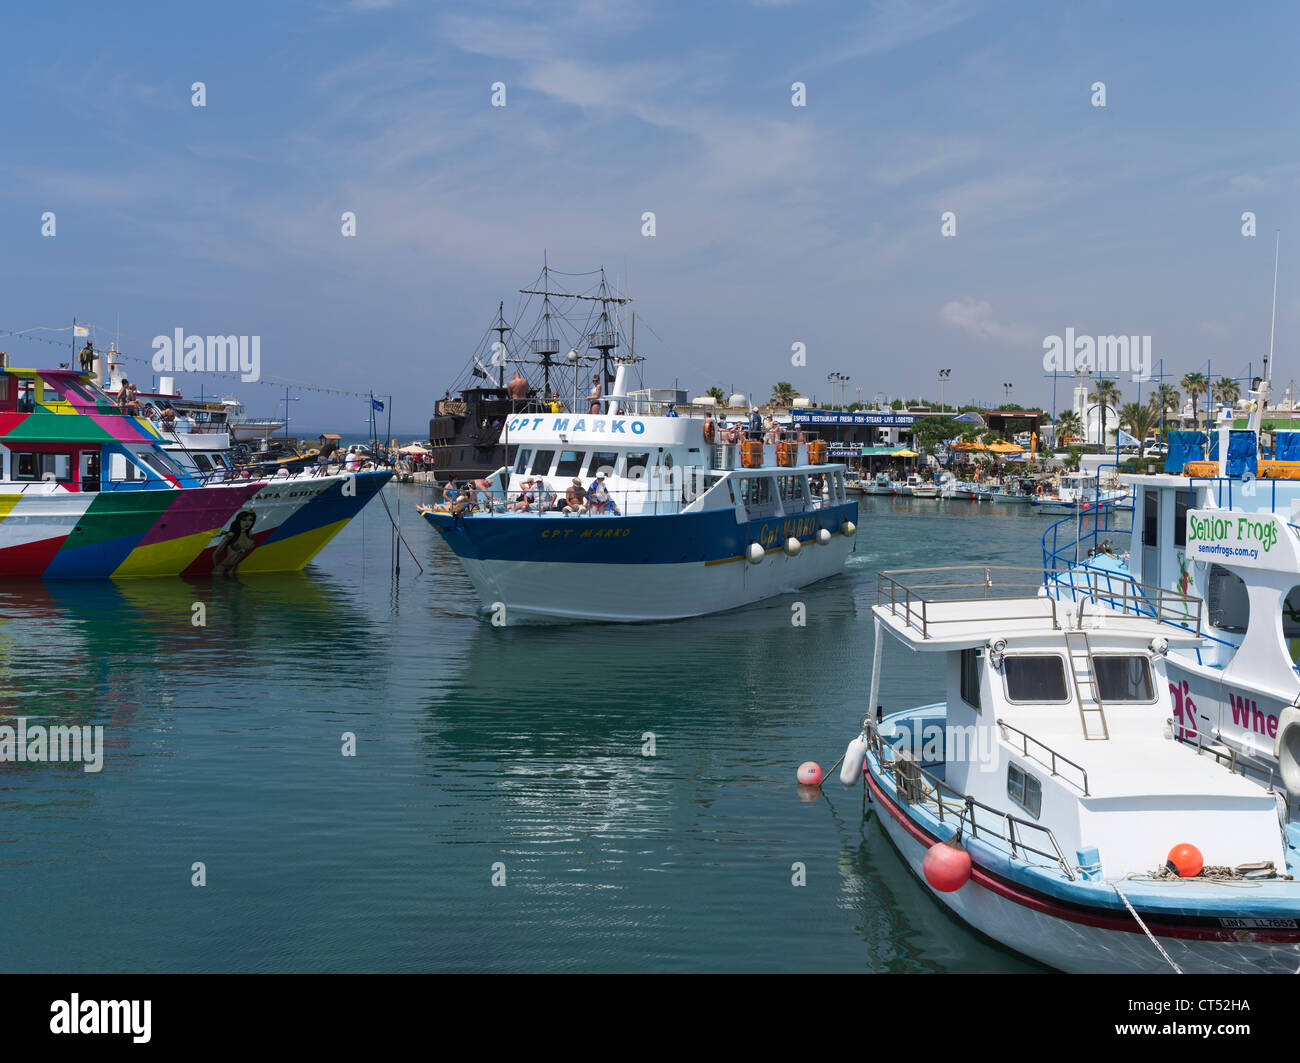 dh Liminaki Hafen AYIA NAPA ZYPERN Tourist Party Vergnügen Kreuzfahrt Boot  verlassen Hafen Menschen Tourismus Stockfotografie - Alamy